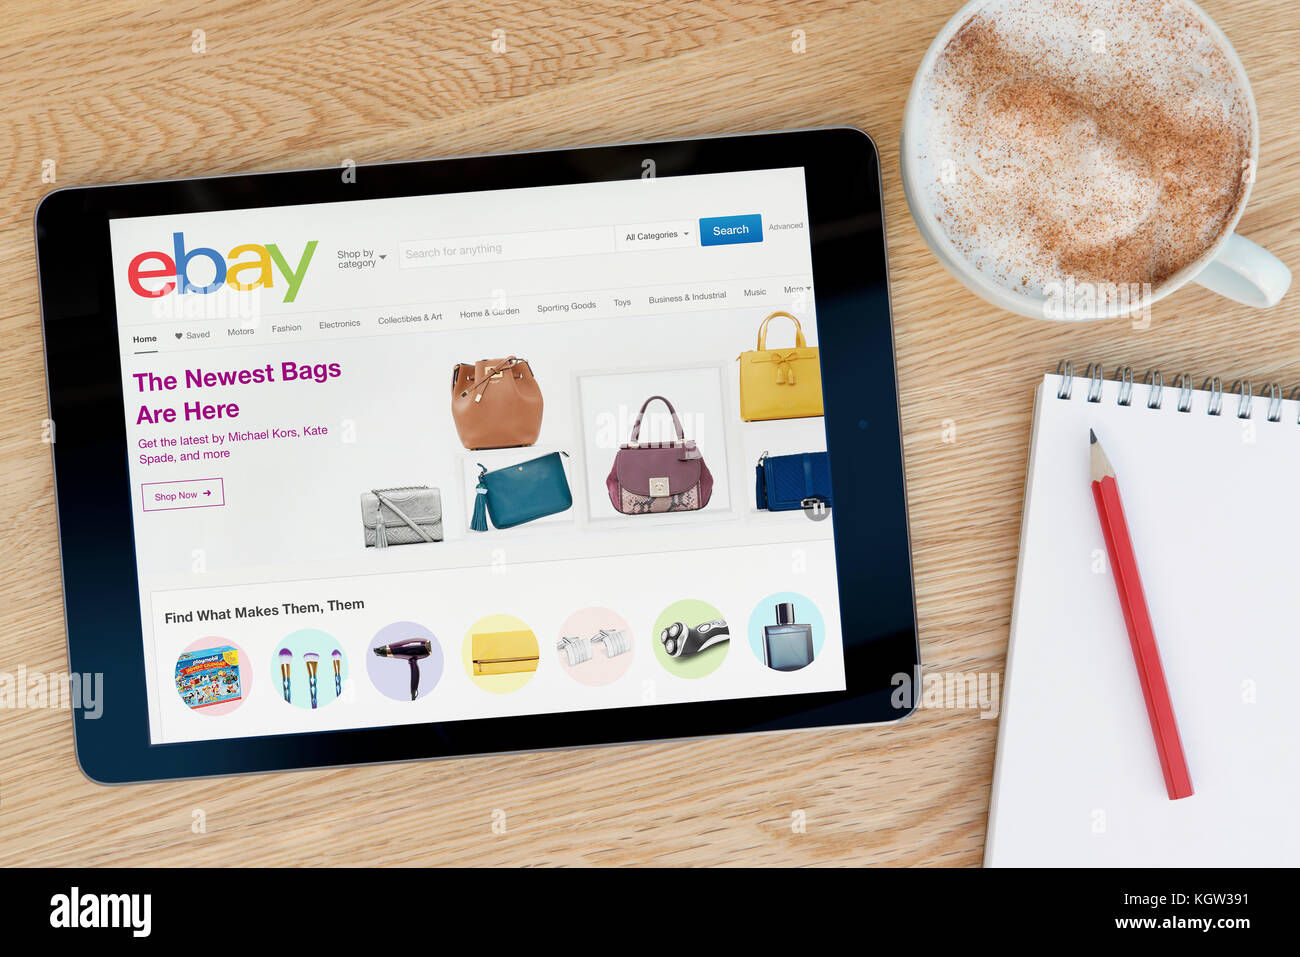 Le site dispose d'eBay sur un iPad tablet device qui repose sur une table en bois à côté d'un bloc-notes et un crayon et une tasse de café (usage éditorial uniquement) Banque D'Images